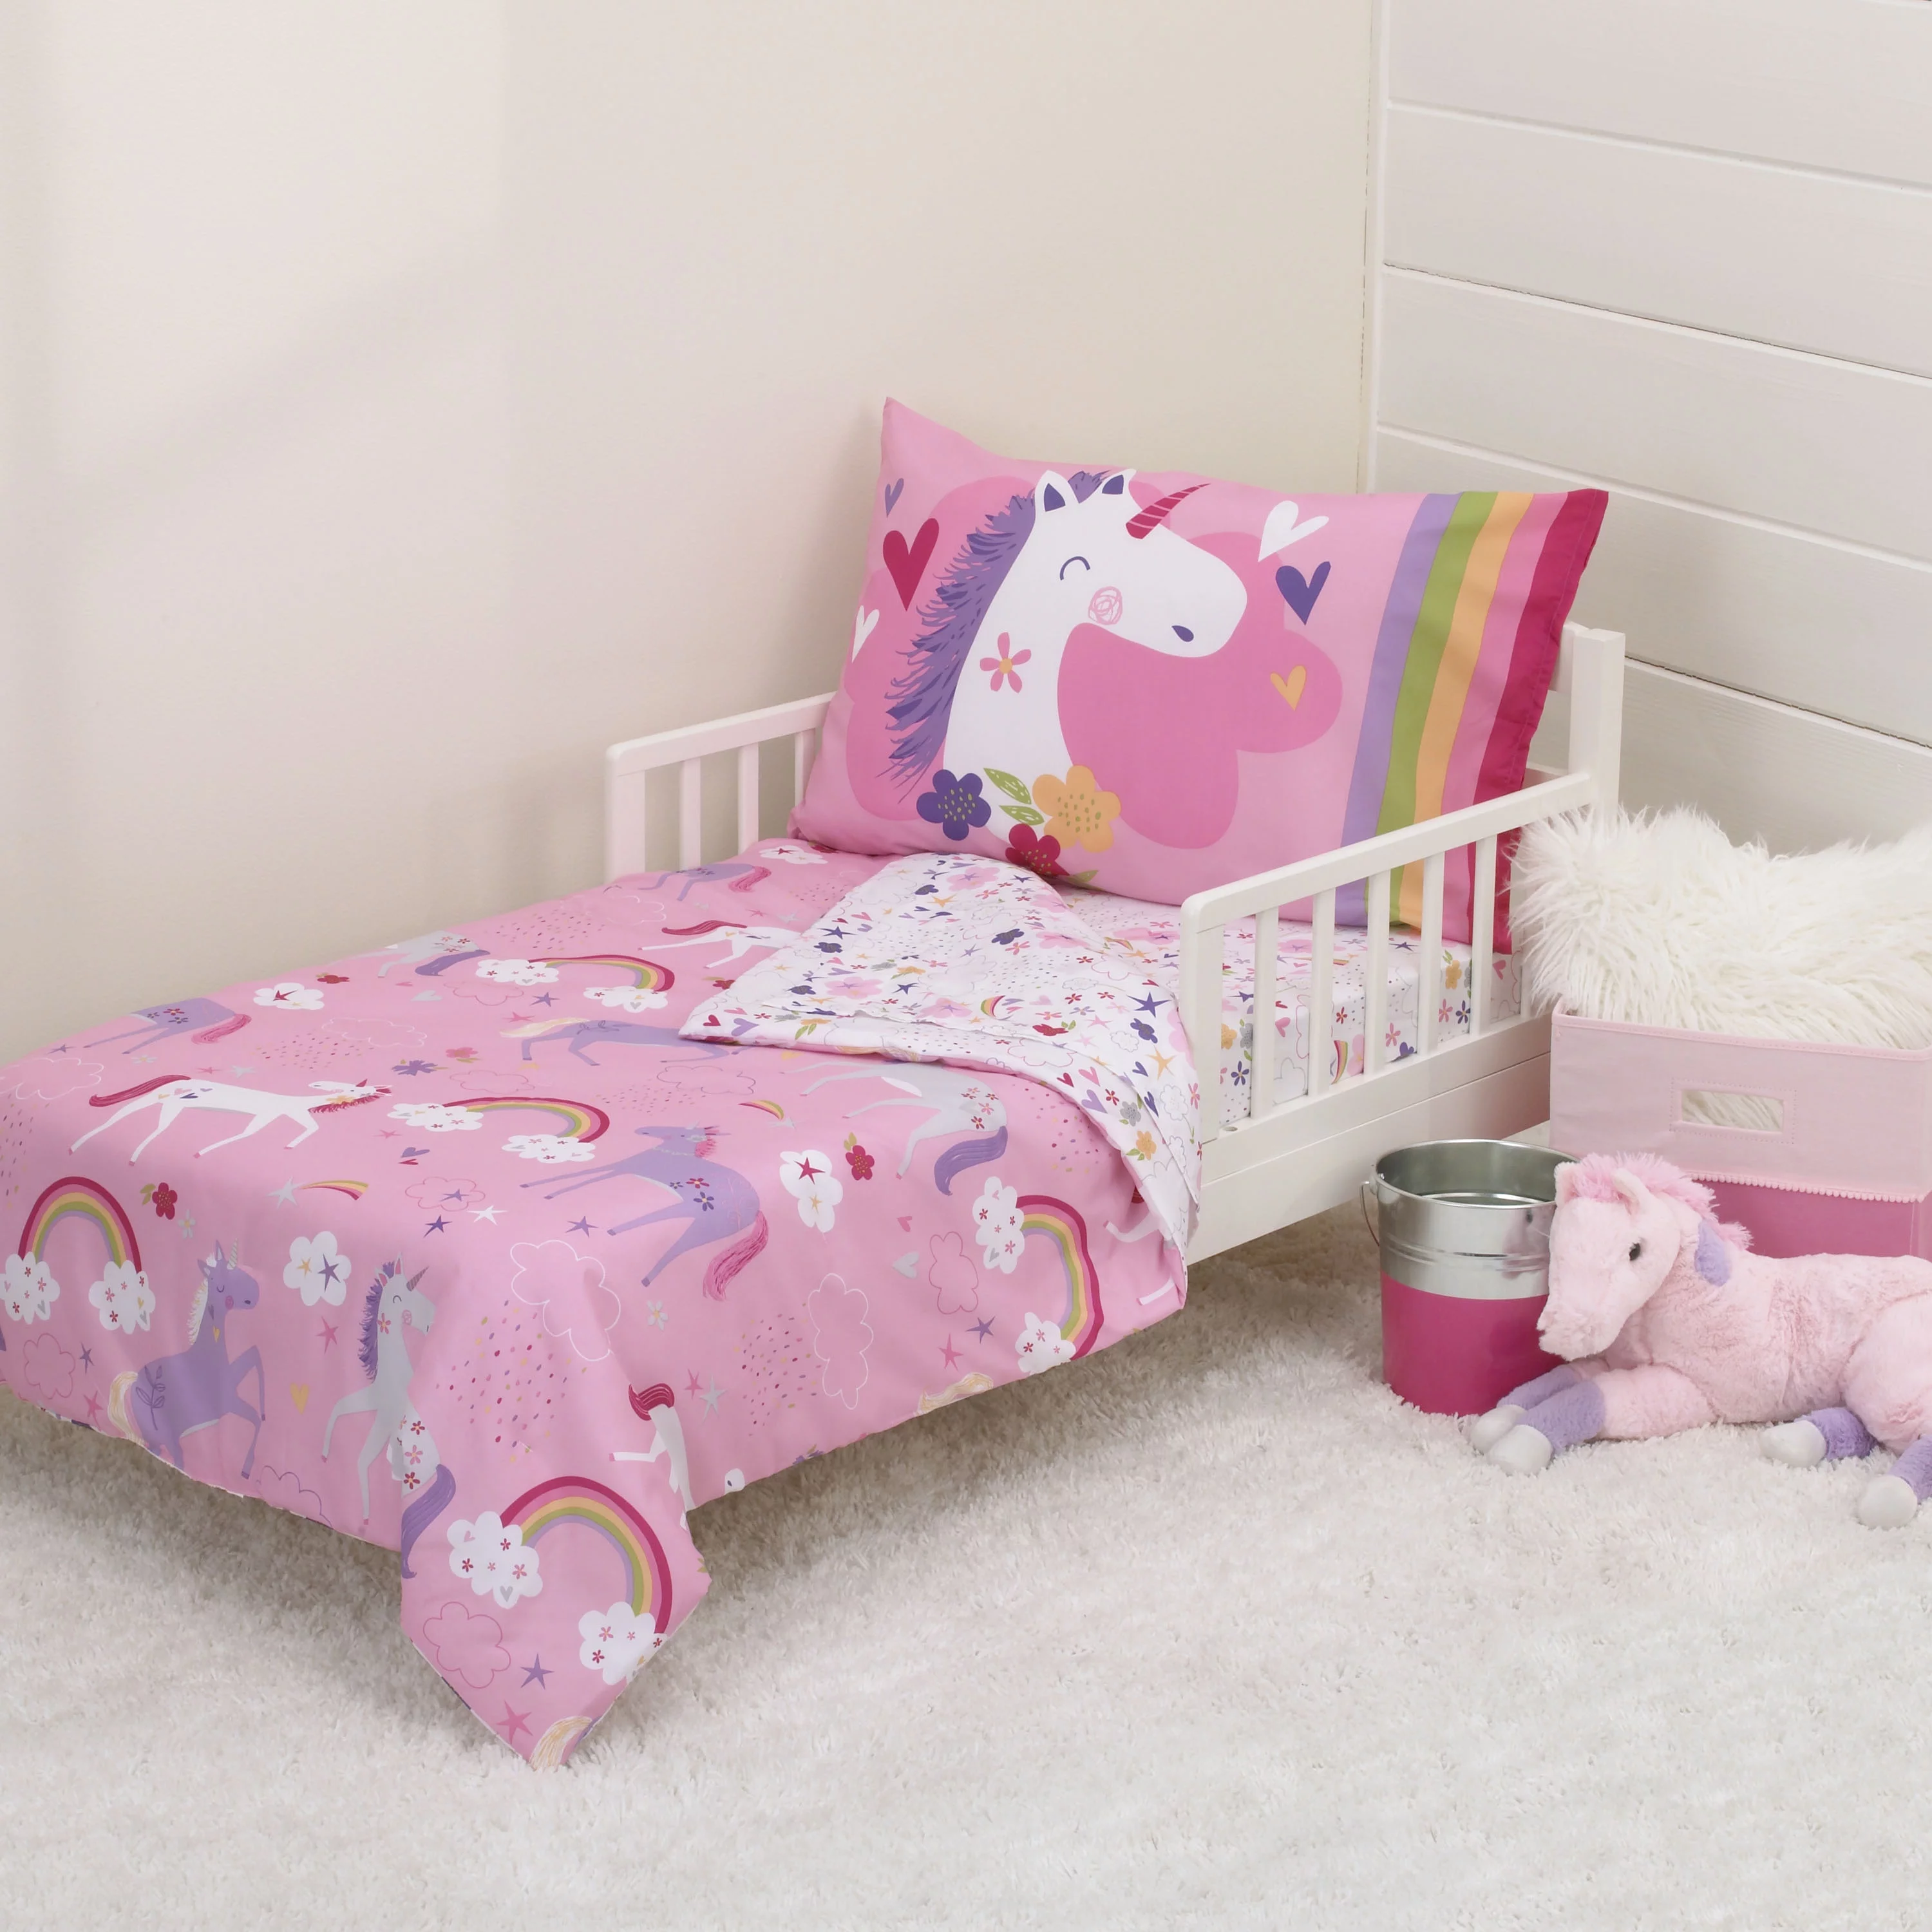 Parent's Choice 4-Piece Toddler Bedding Set, Pink, Unicorn